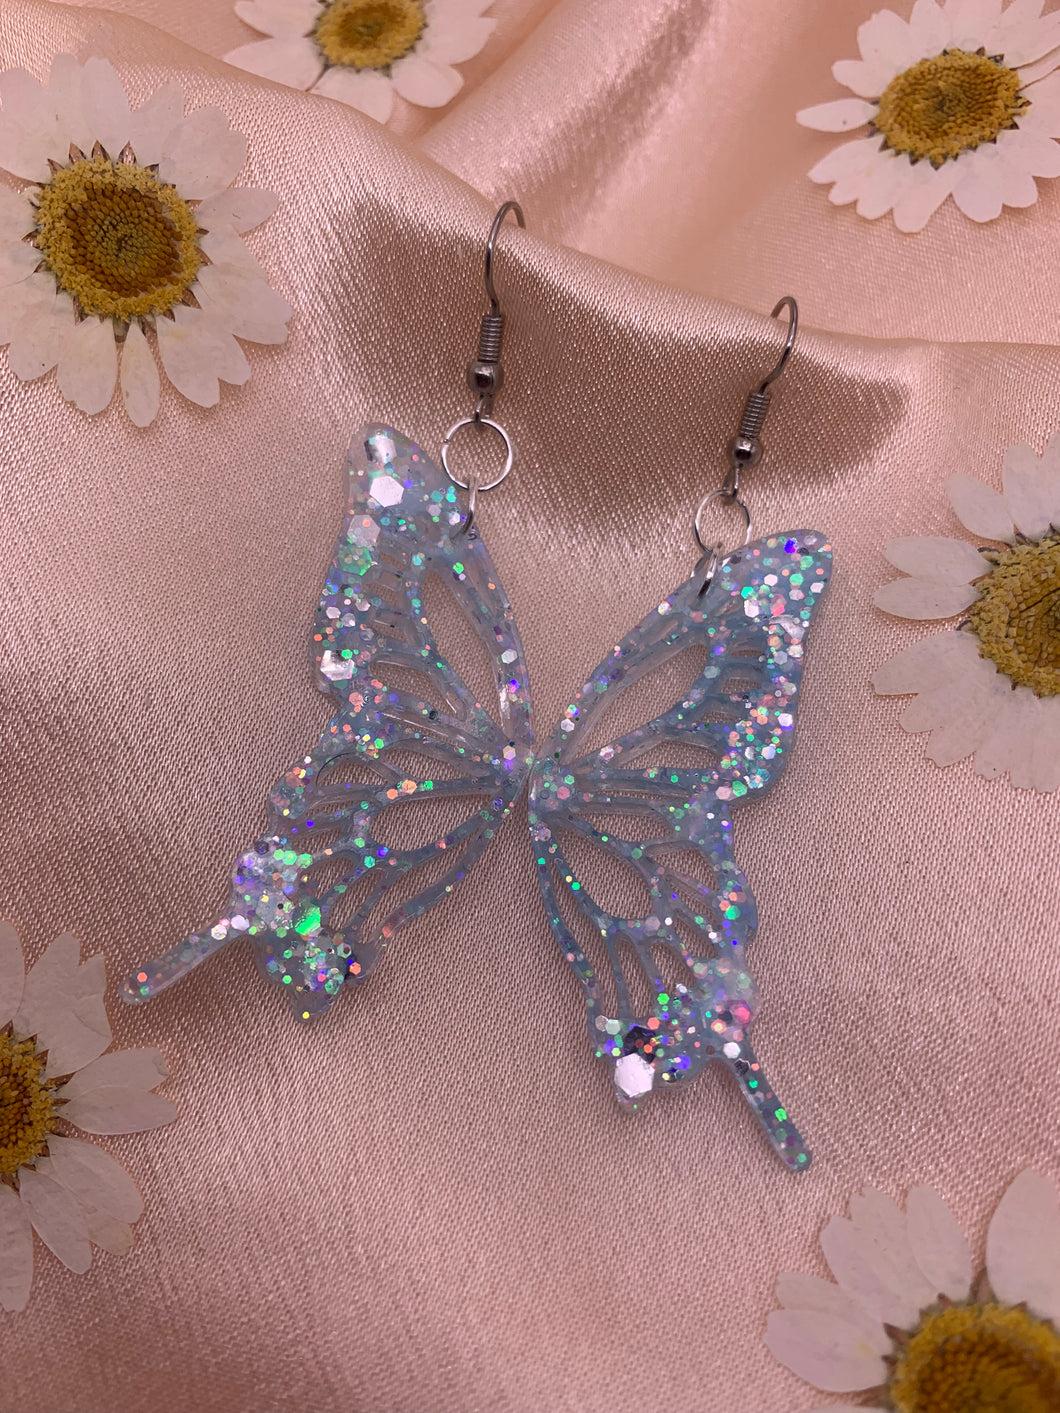 Glow in the dark butterfly wing earrings